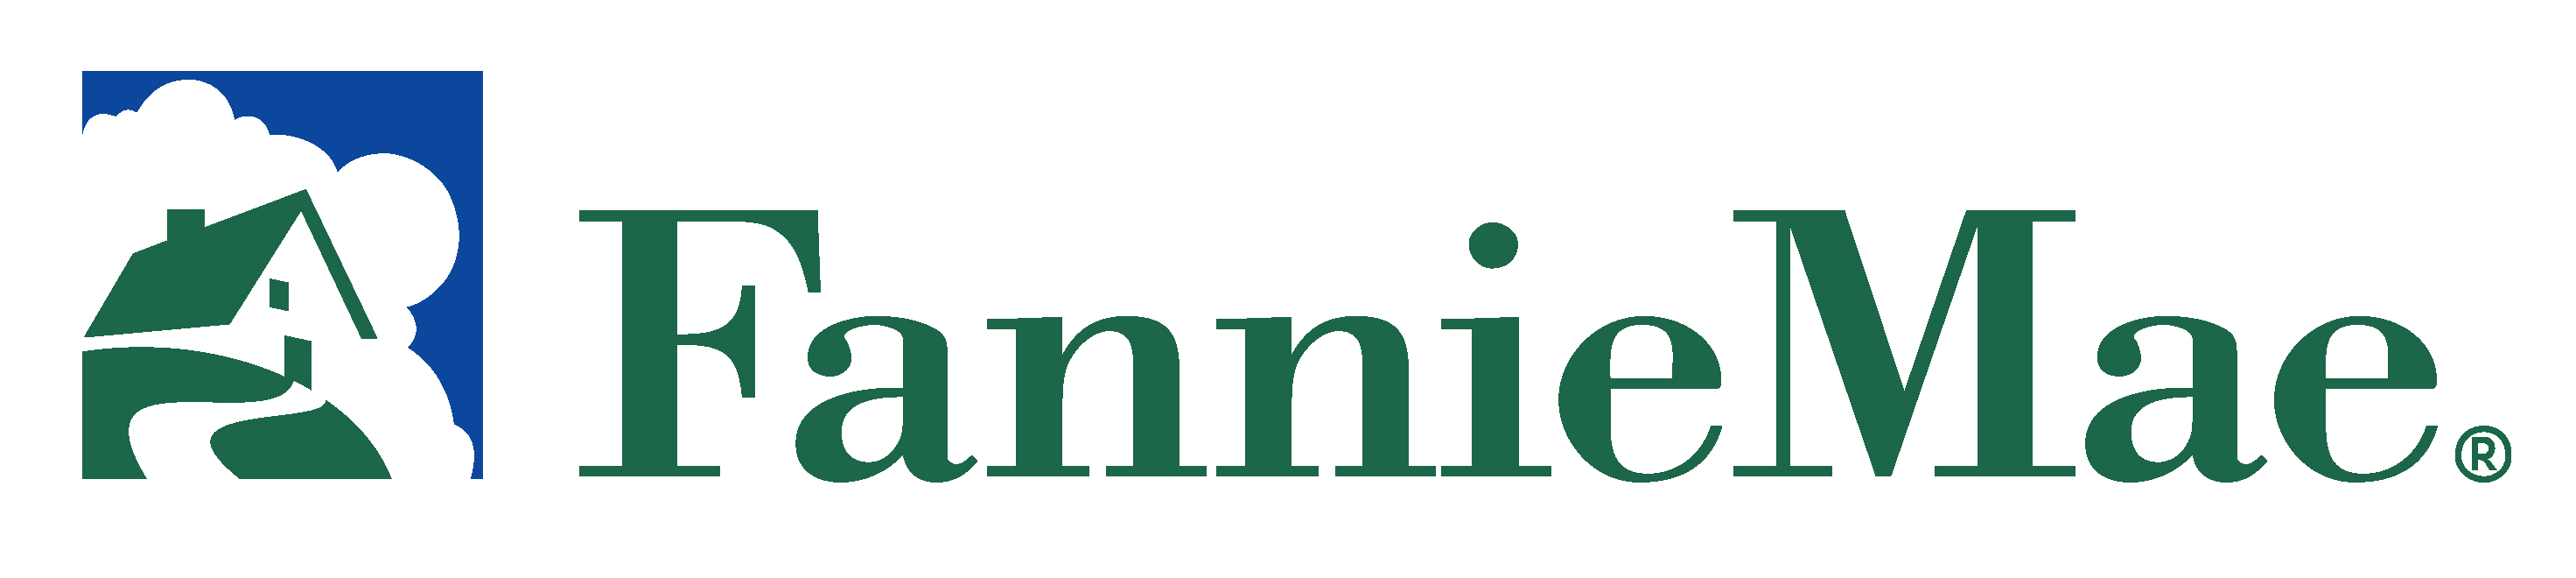 Fanniemae Logo PNG Image